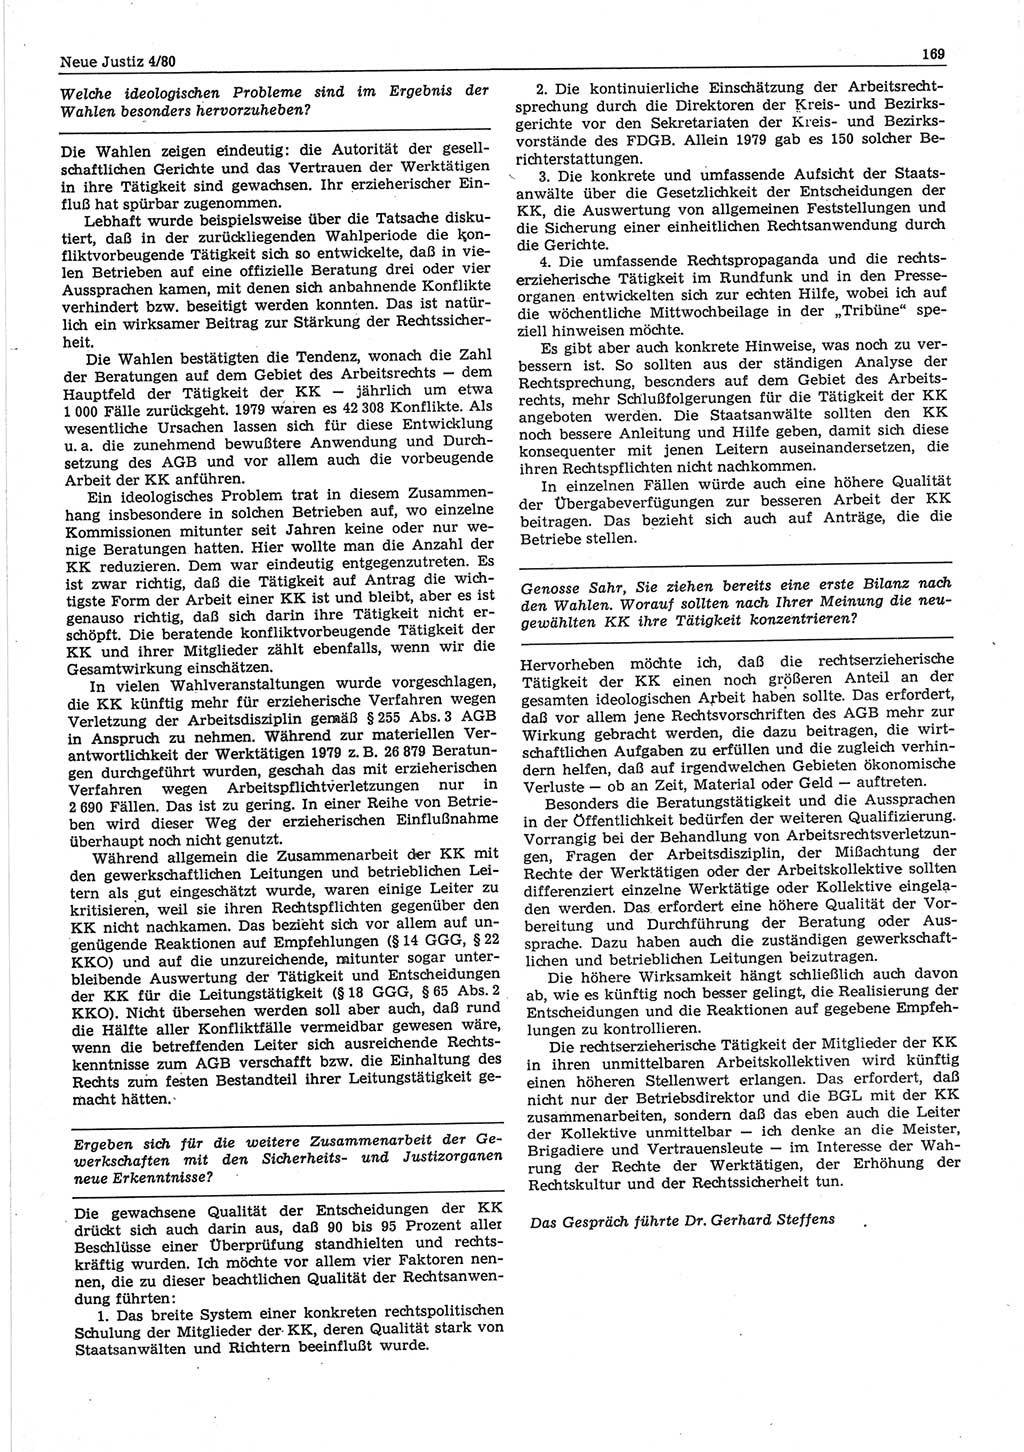 Neue Justiz (NJ), Zeitschrift für sozialistisches Recht und Gesetzlichkeit [Deutsche Demokratische Republik (DDR)], 34. Jahrgang 1980, Seite 169 (NJ DDR 1980, S. 169)